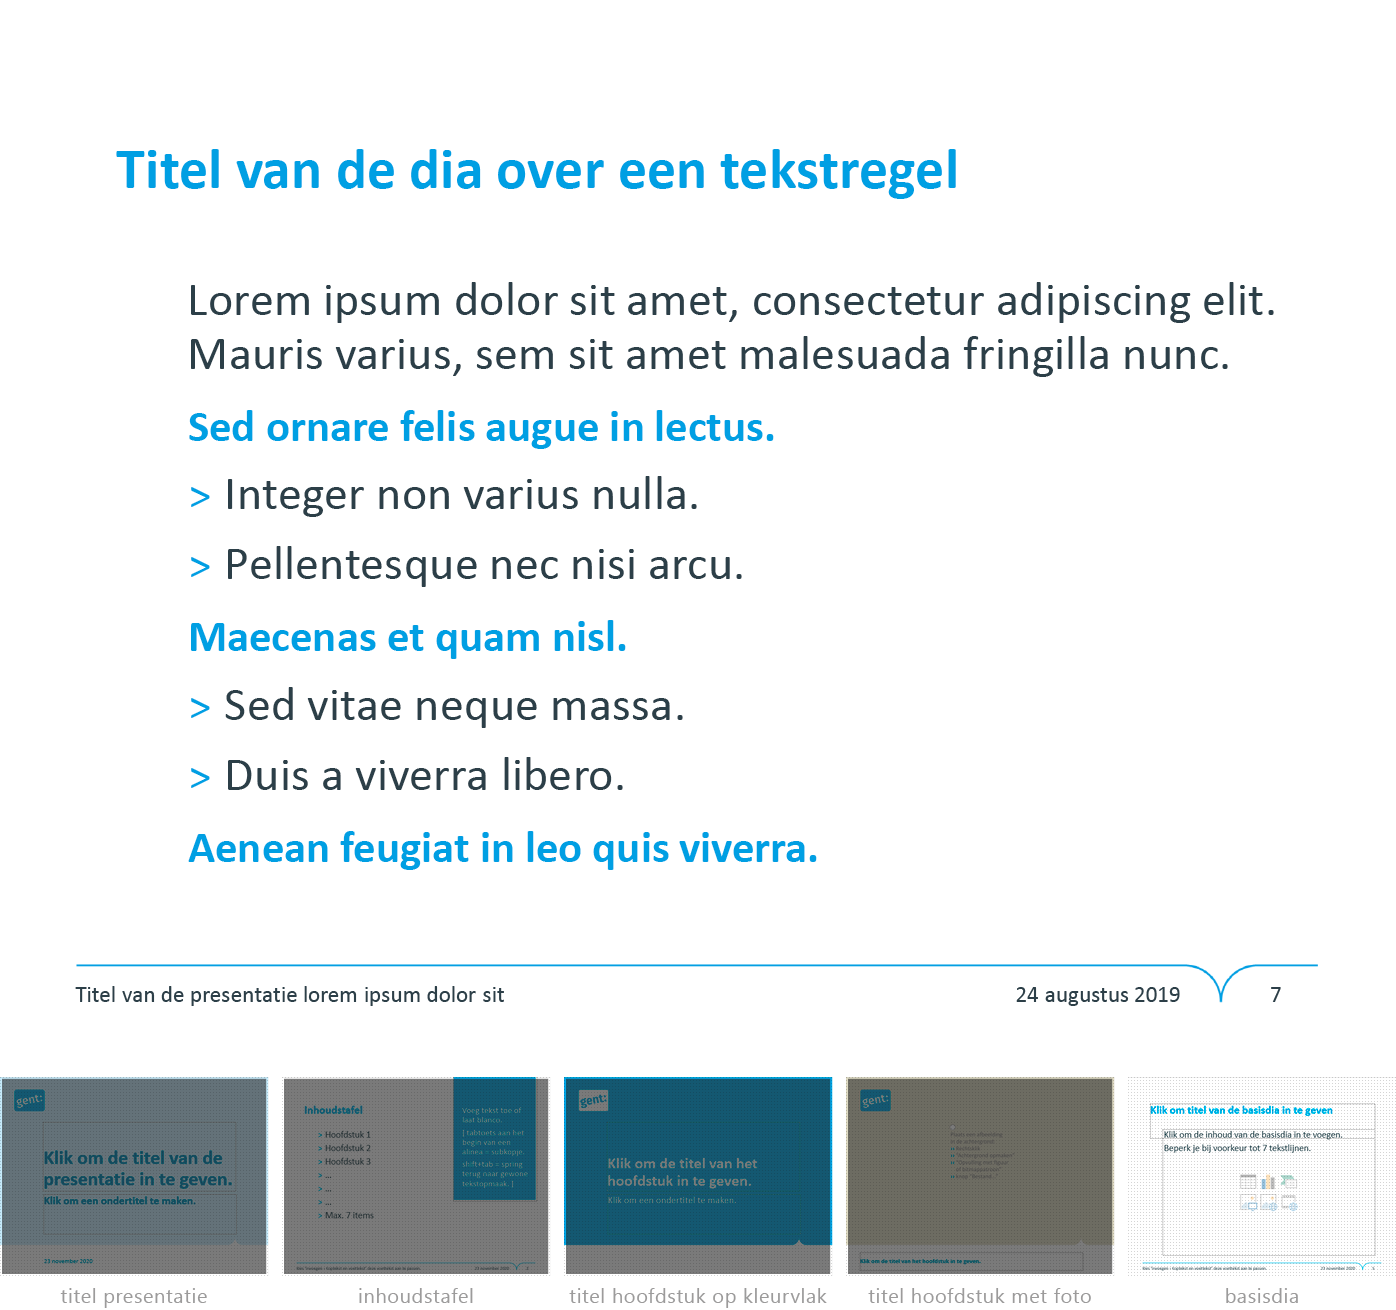 Dia-type "basisdia" uit het Powerpoint-sjabloon van de Stad Gent.